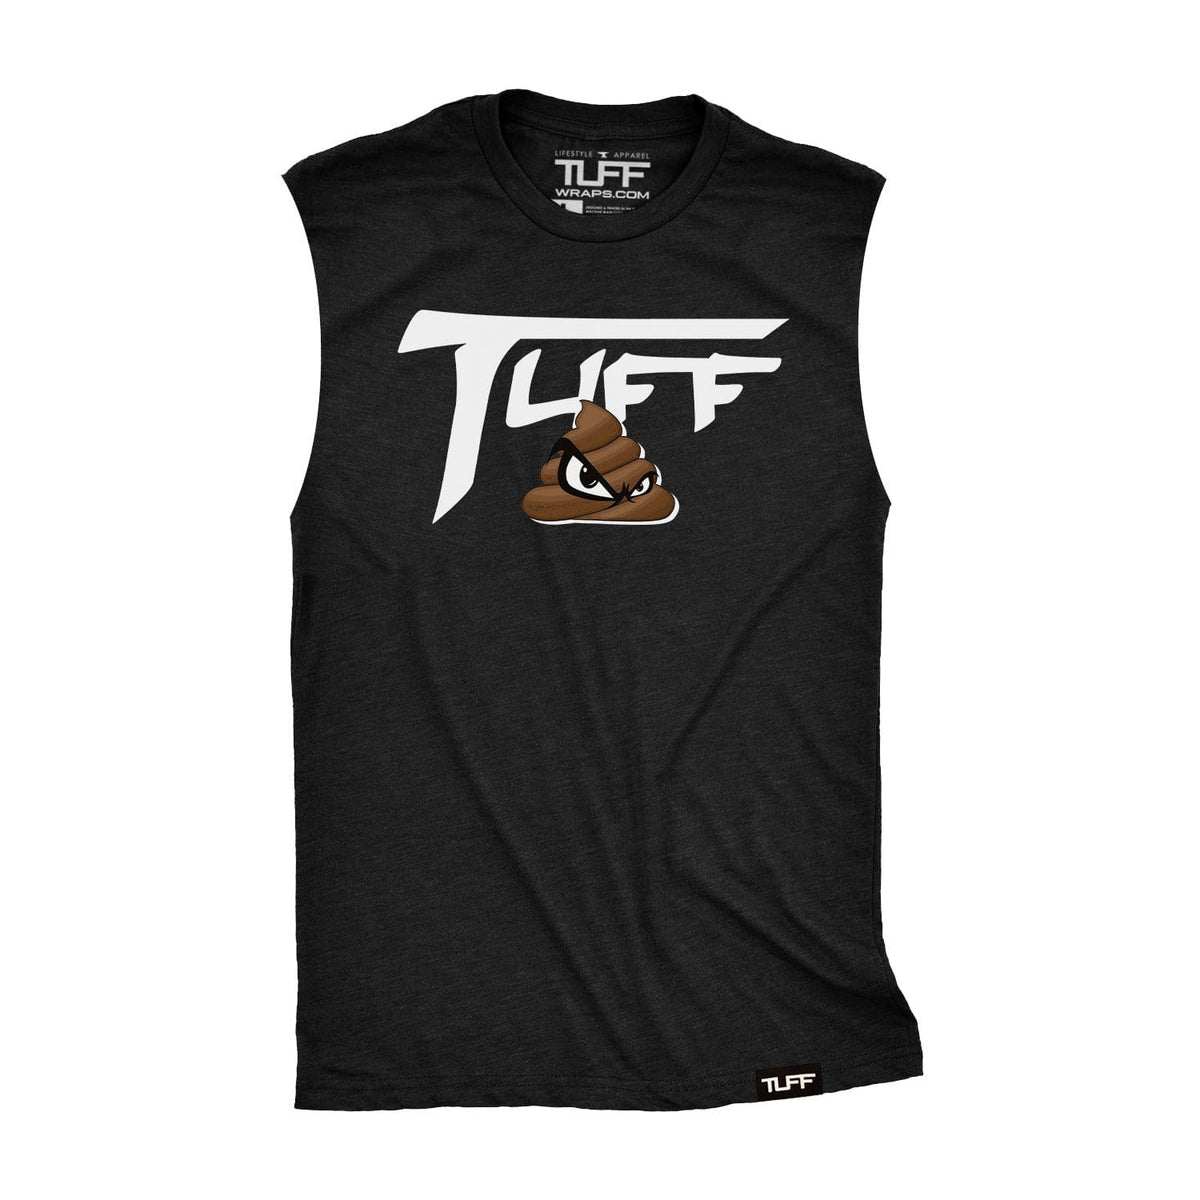 TUFF SH*T Raw Edge Muscle Tank S / Black TuffWraps.com